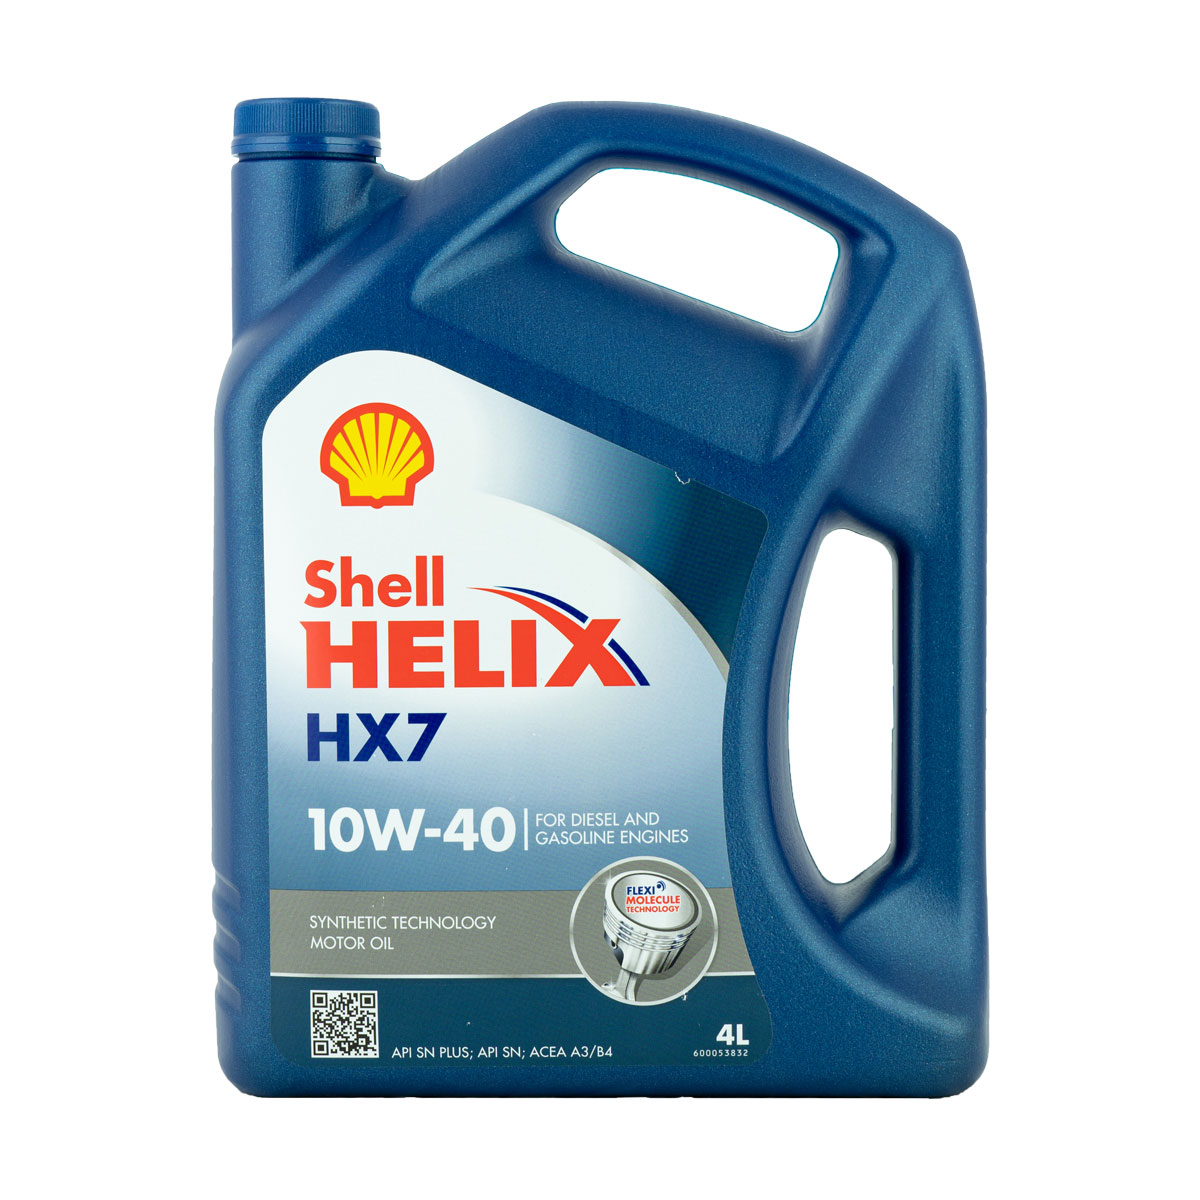 Shell Helix HX7 10W-40 Motoröl, 4l